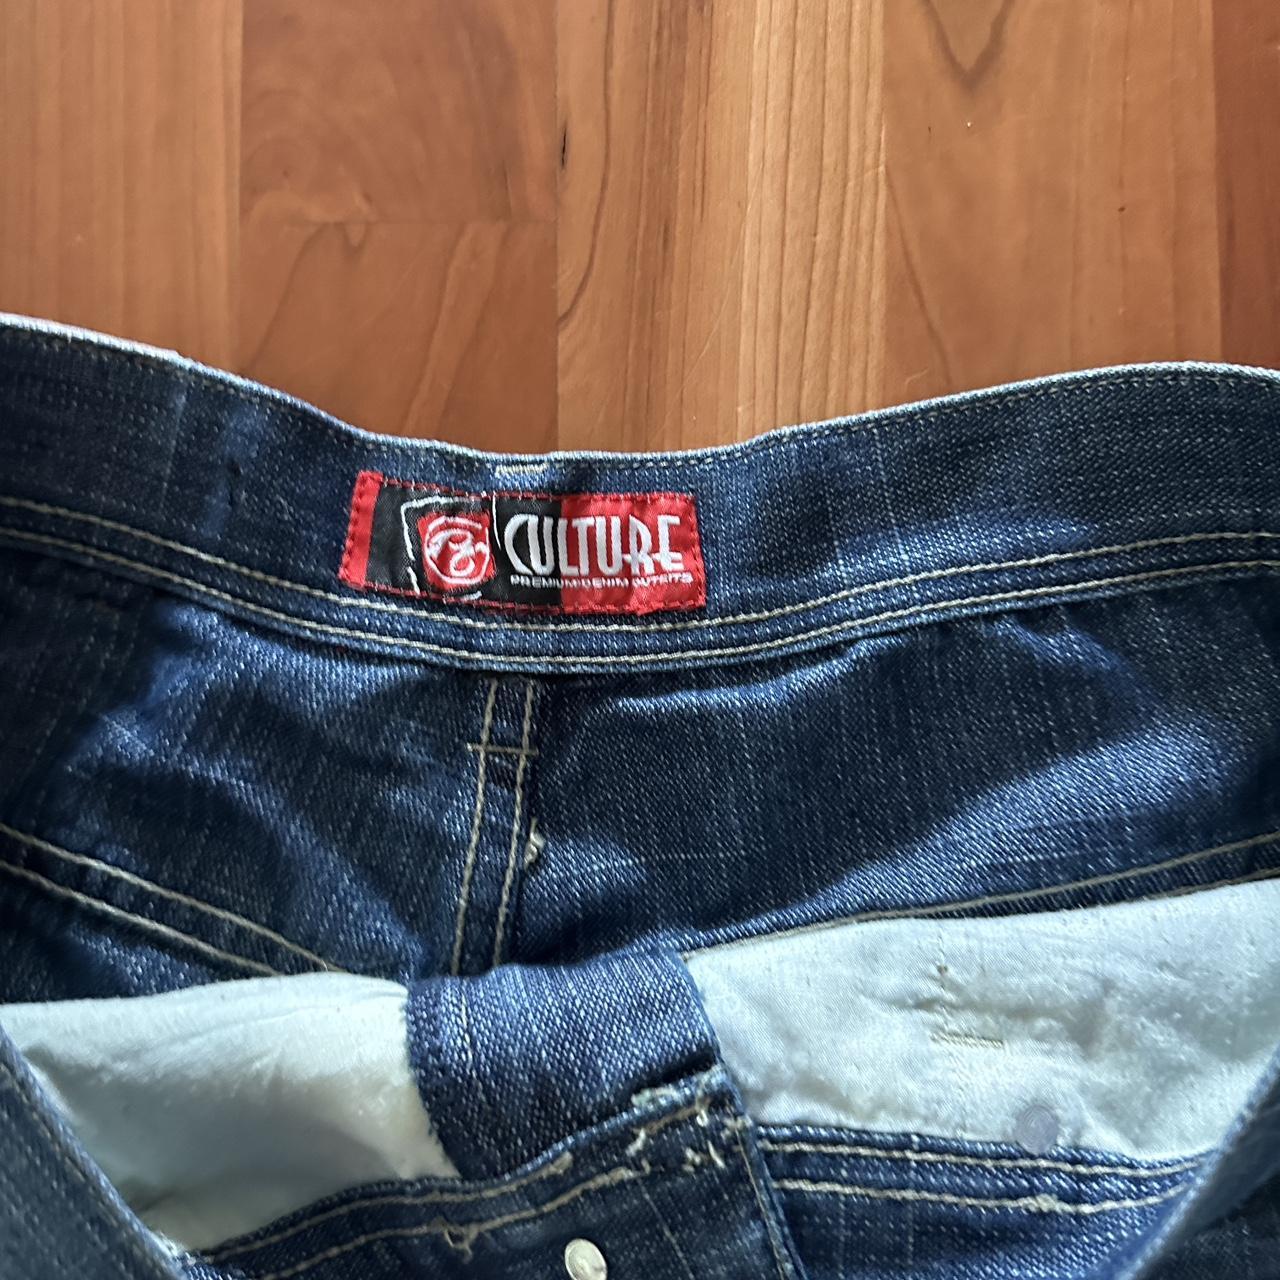 Culture 90’s baggy jeans size 38x 30 super cool... - Depop